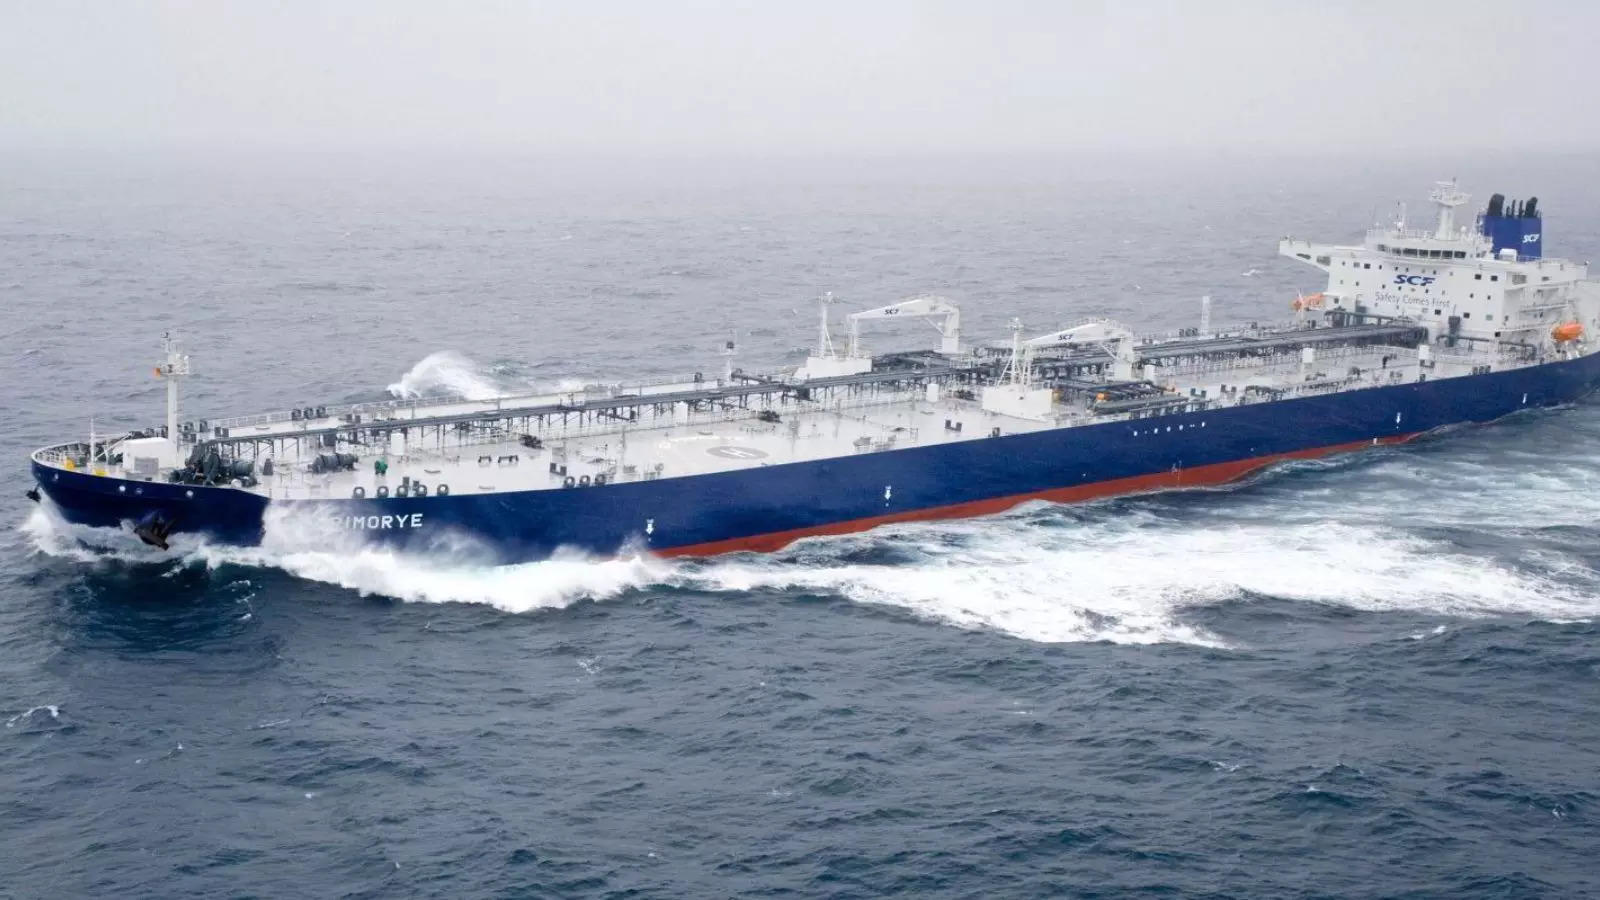 India Receive Russian Oil Cargo,रूसी तेल से कमाई करेगा भारत… बंदरगाह पर पहुंचा एससीएफ टैंकर, अमेरिकी प्रतिबंधों से रुक गया था आयात – india receives oil cargo in russian scf tanker after brief halt report